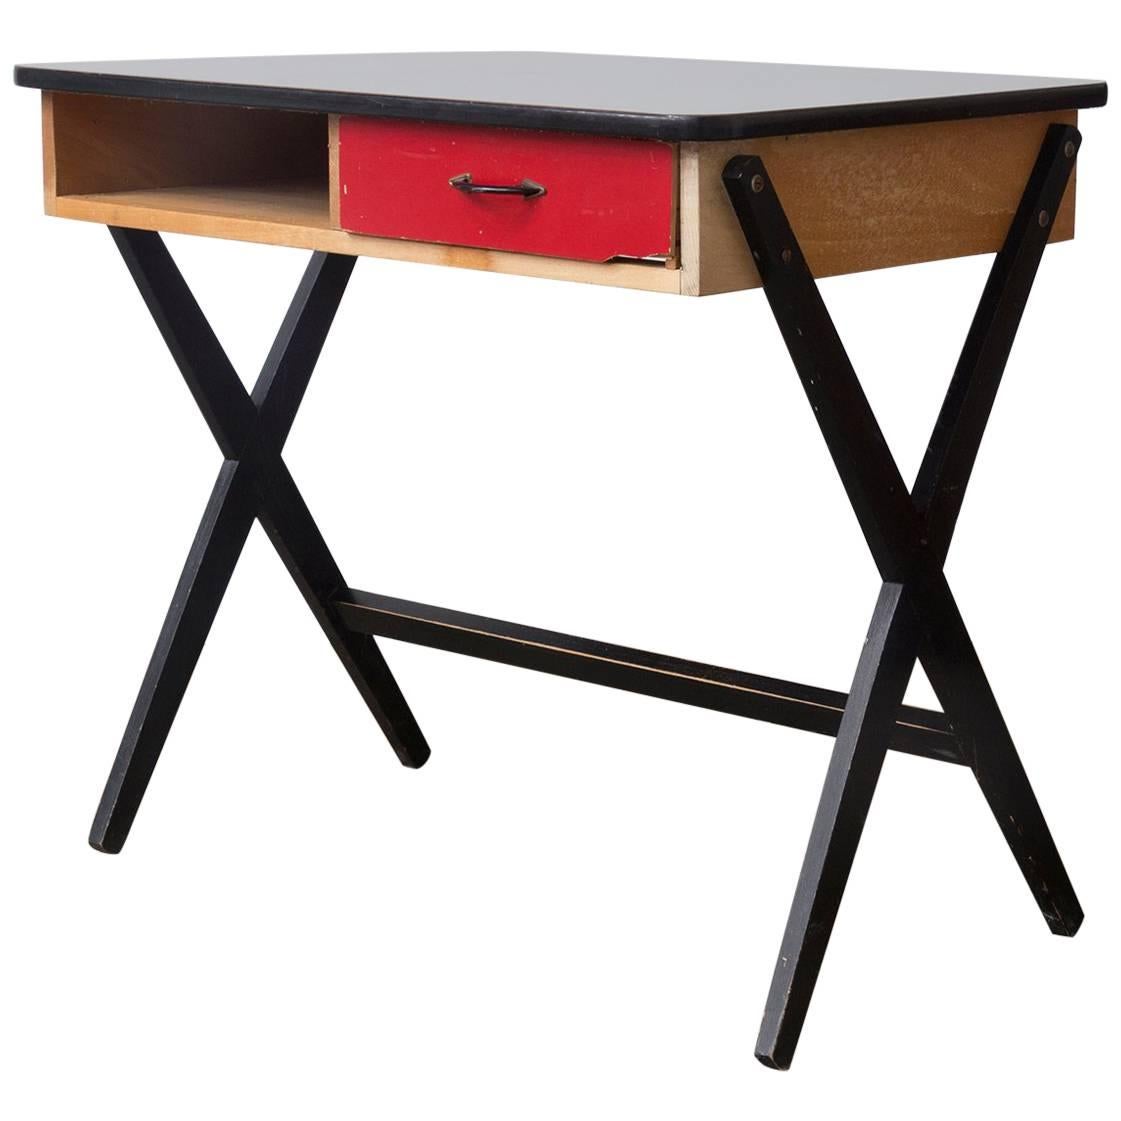 1954, Coen de Vries für Devo Holz-Schreibtisch mit roter Schublade und Formica-Platte